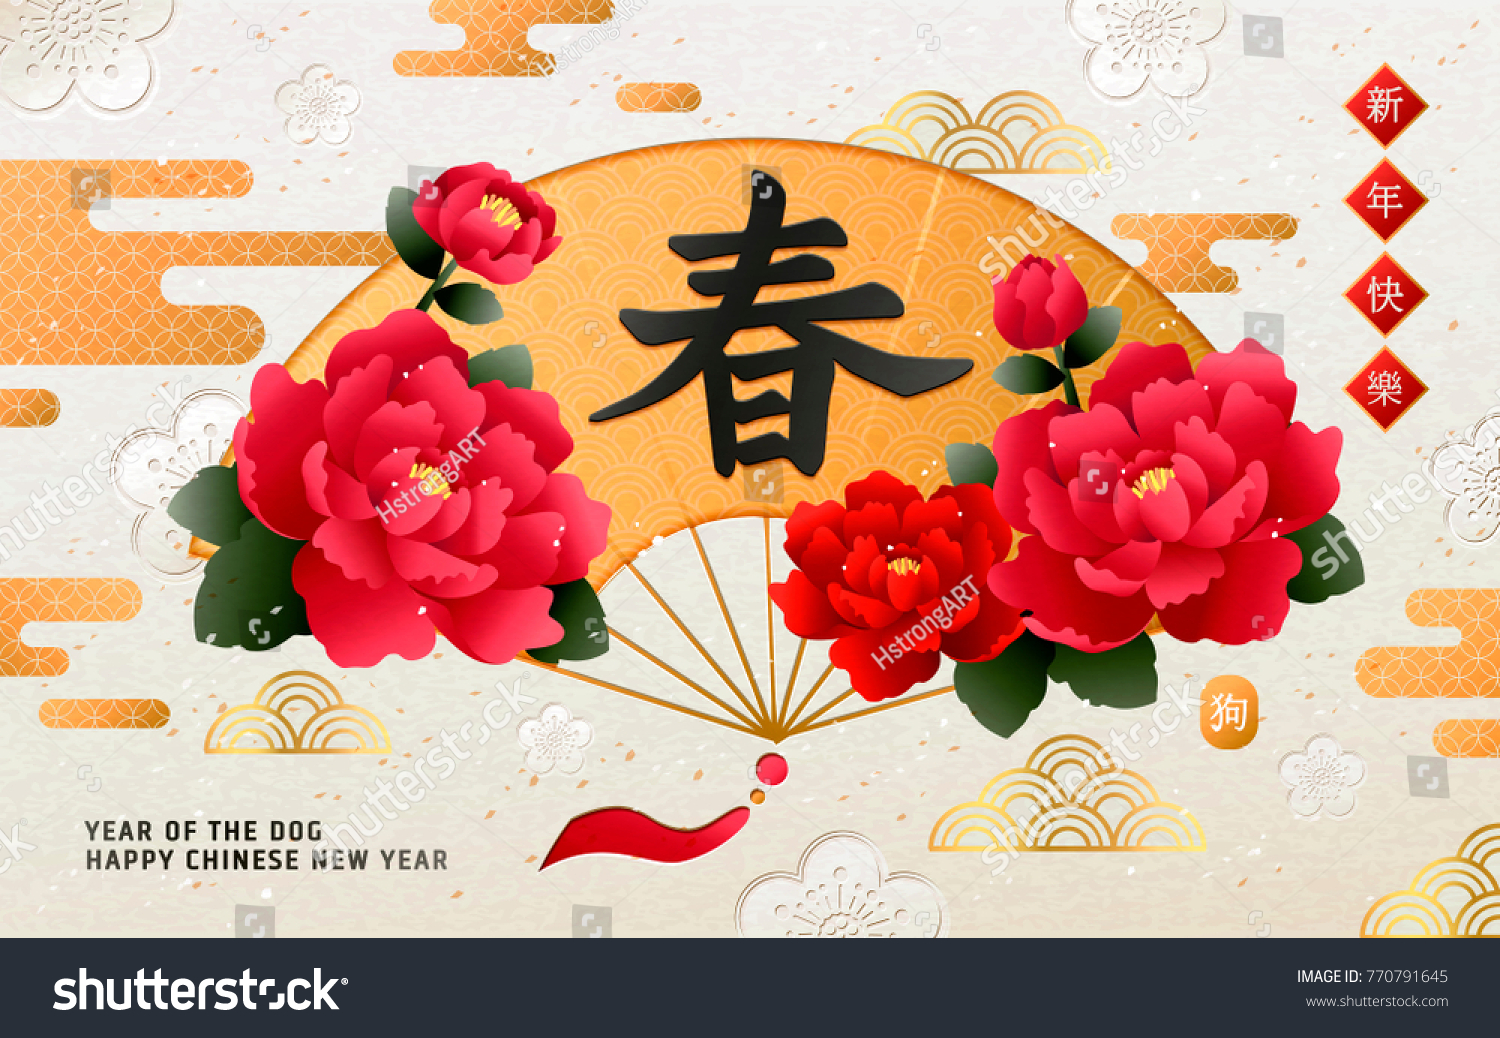 Китайские новогодние конверты